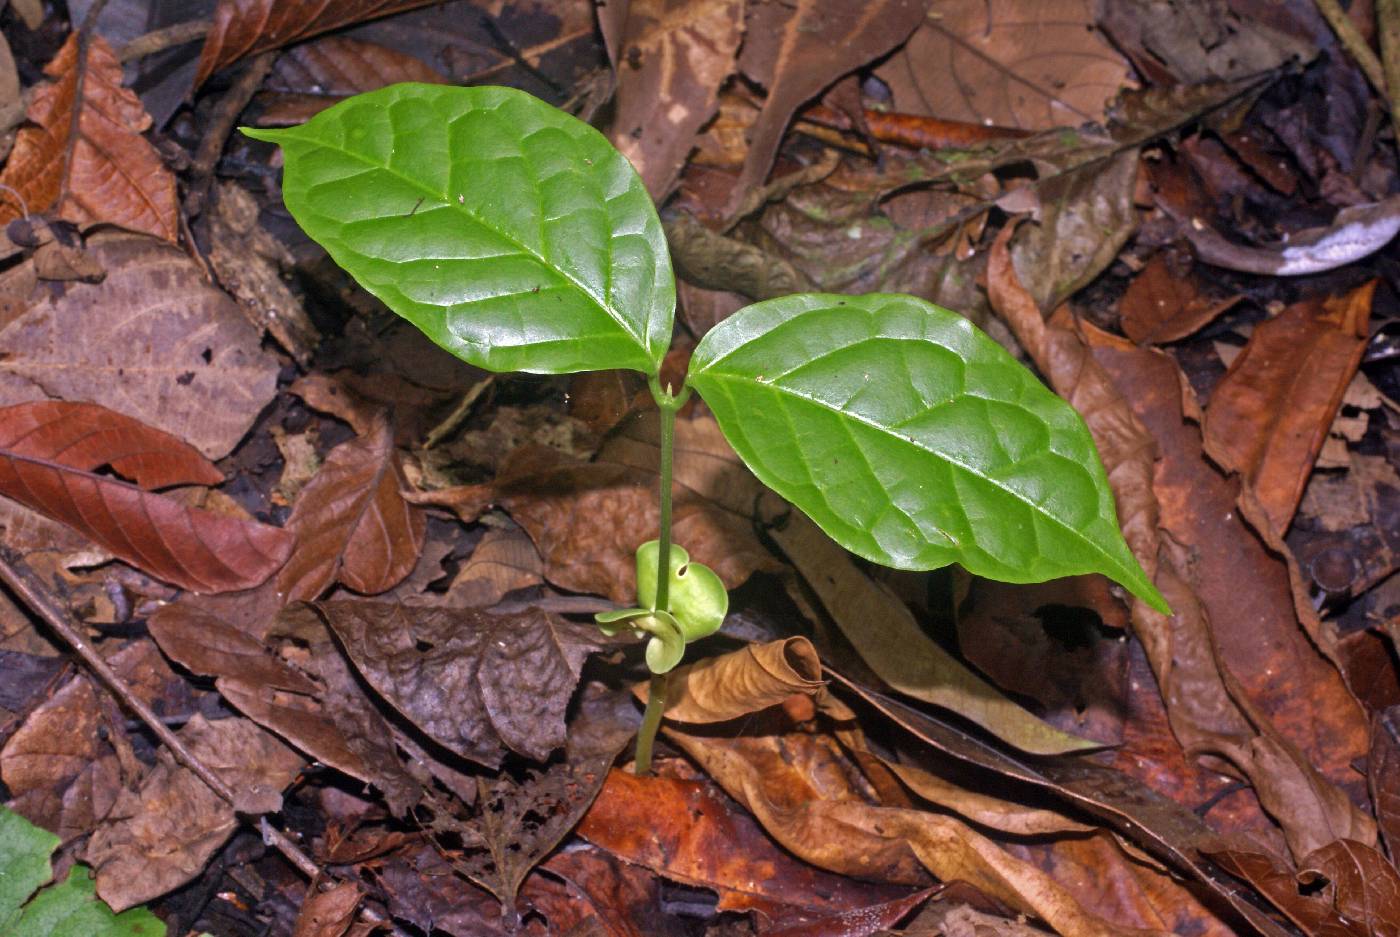 Callichlamys latifolia image